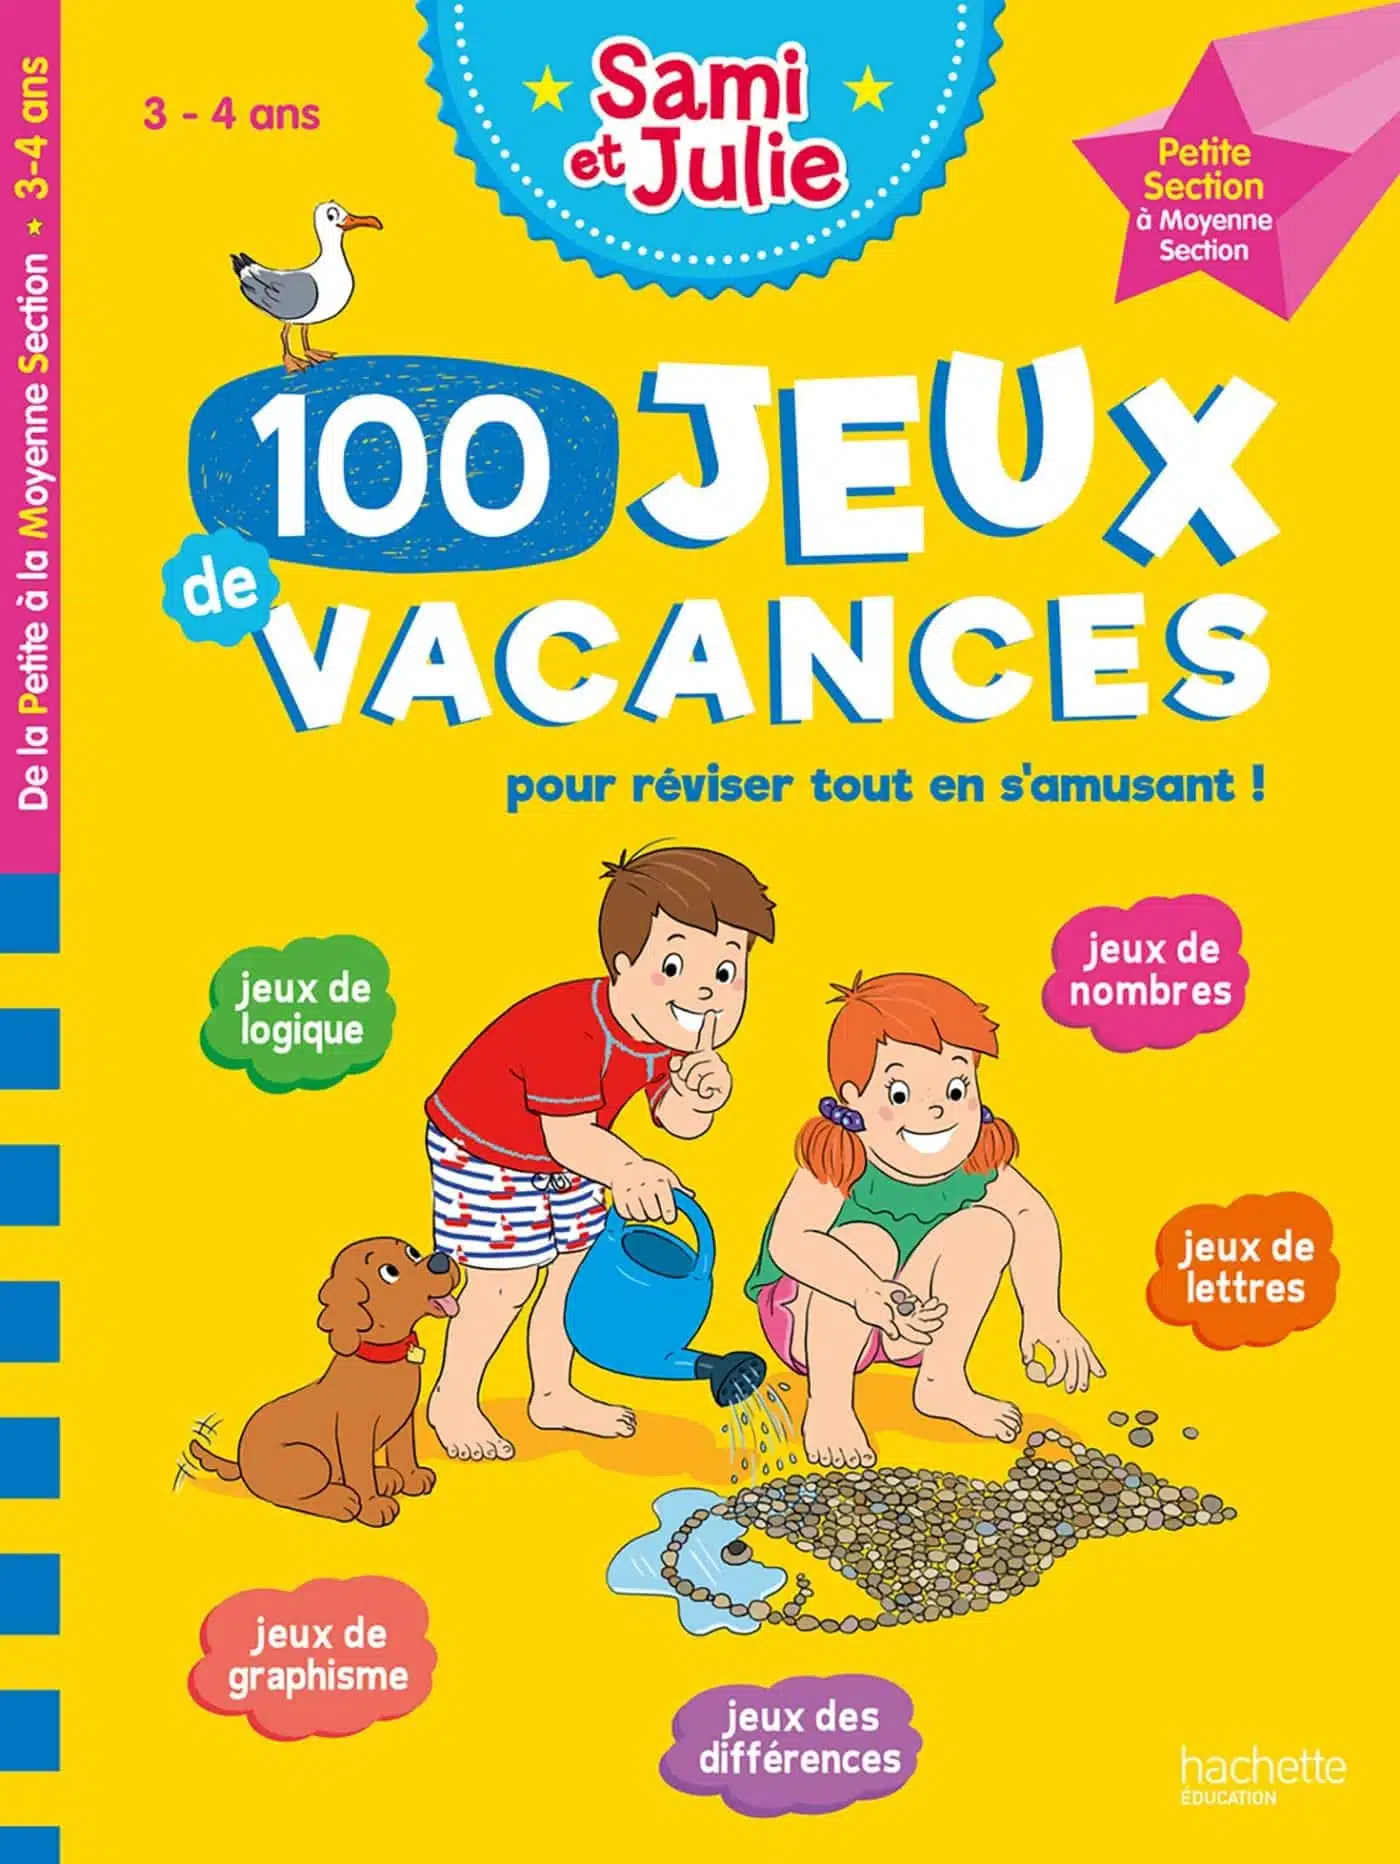 100 Jeux de vacances avec Sami et Julie de la PS à la MS (3-4 ans)